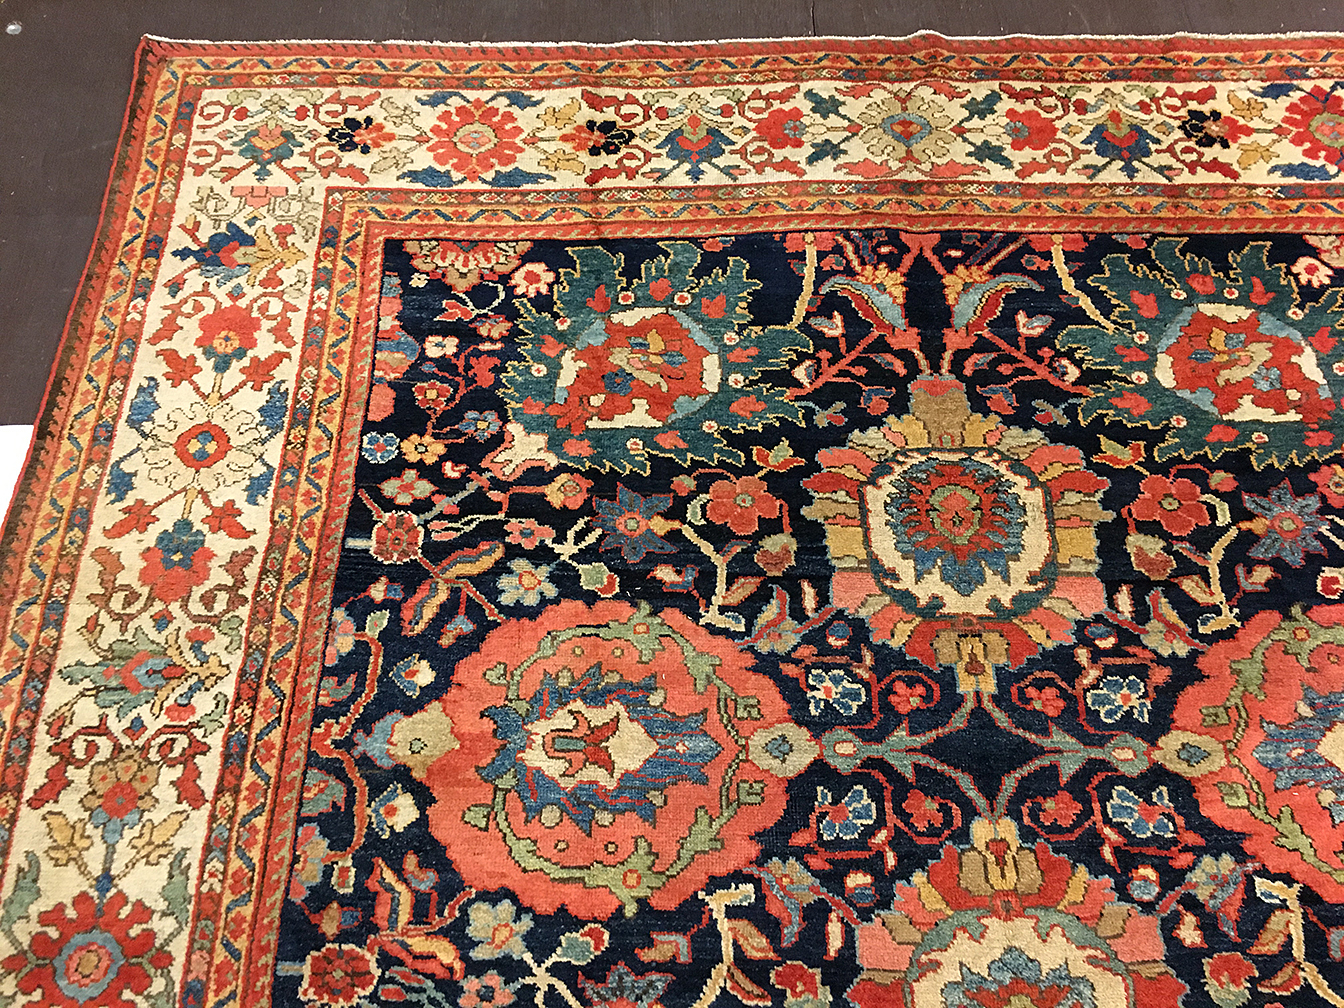 Antique mahal Carpet - # 80005